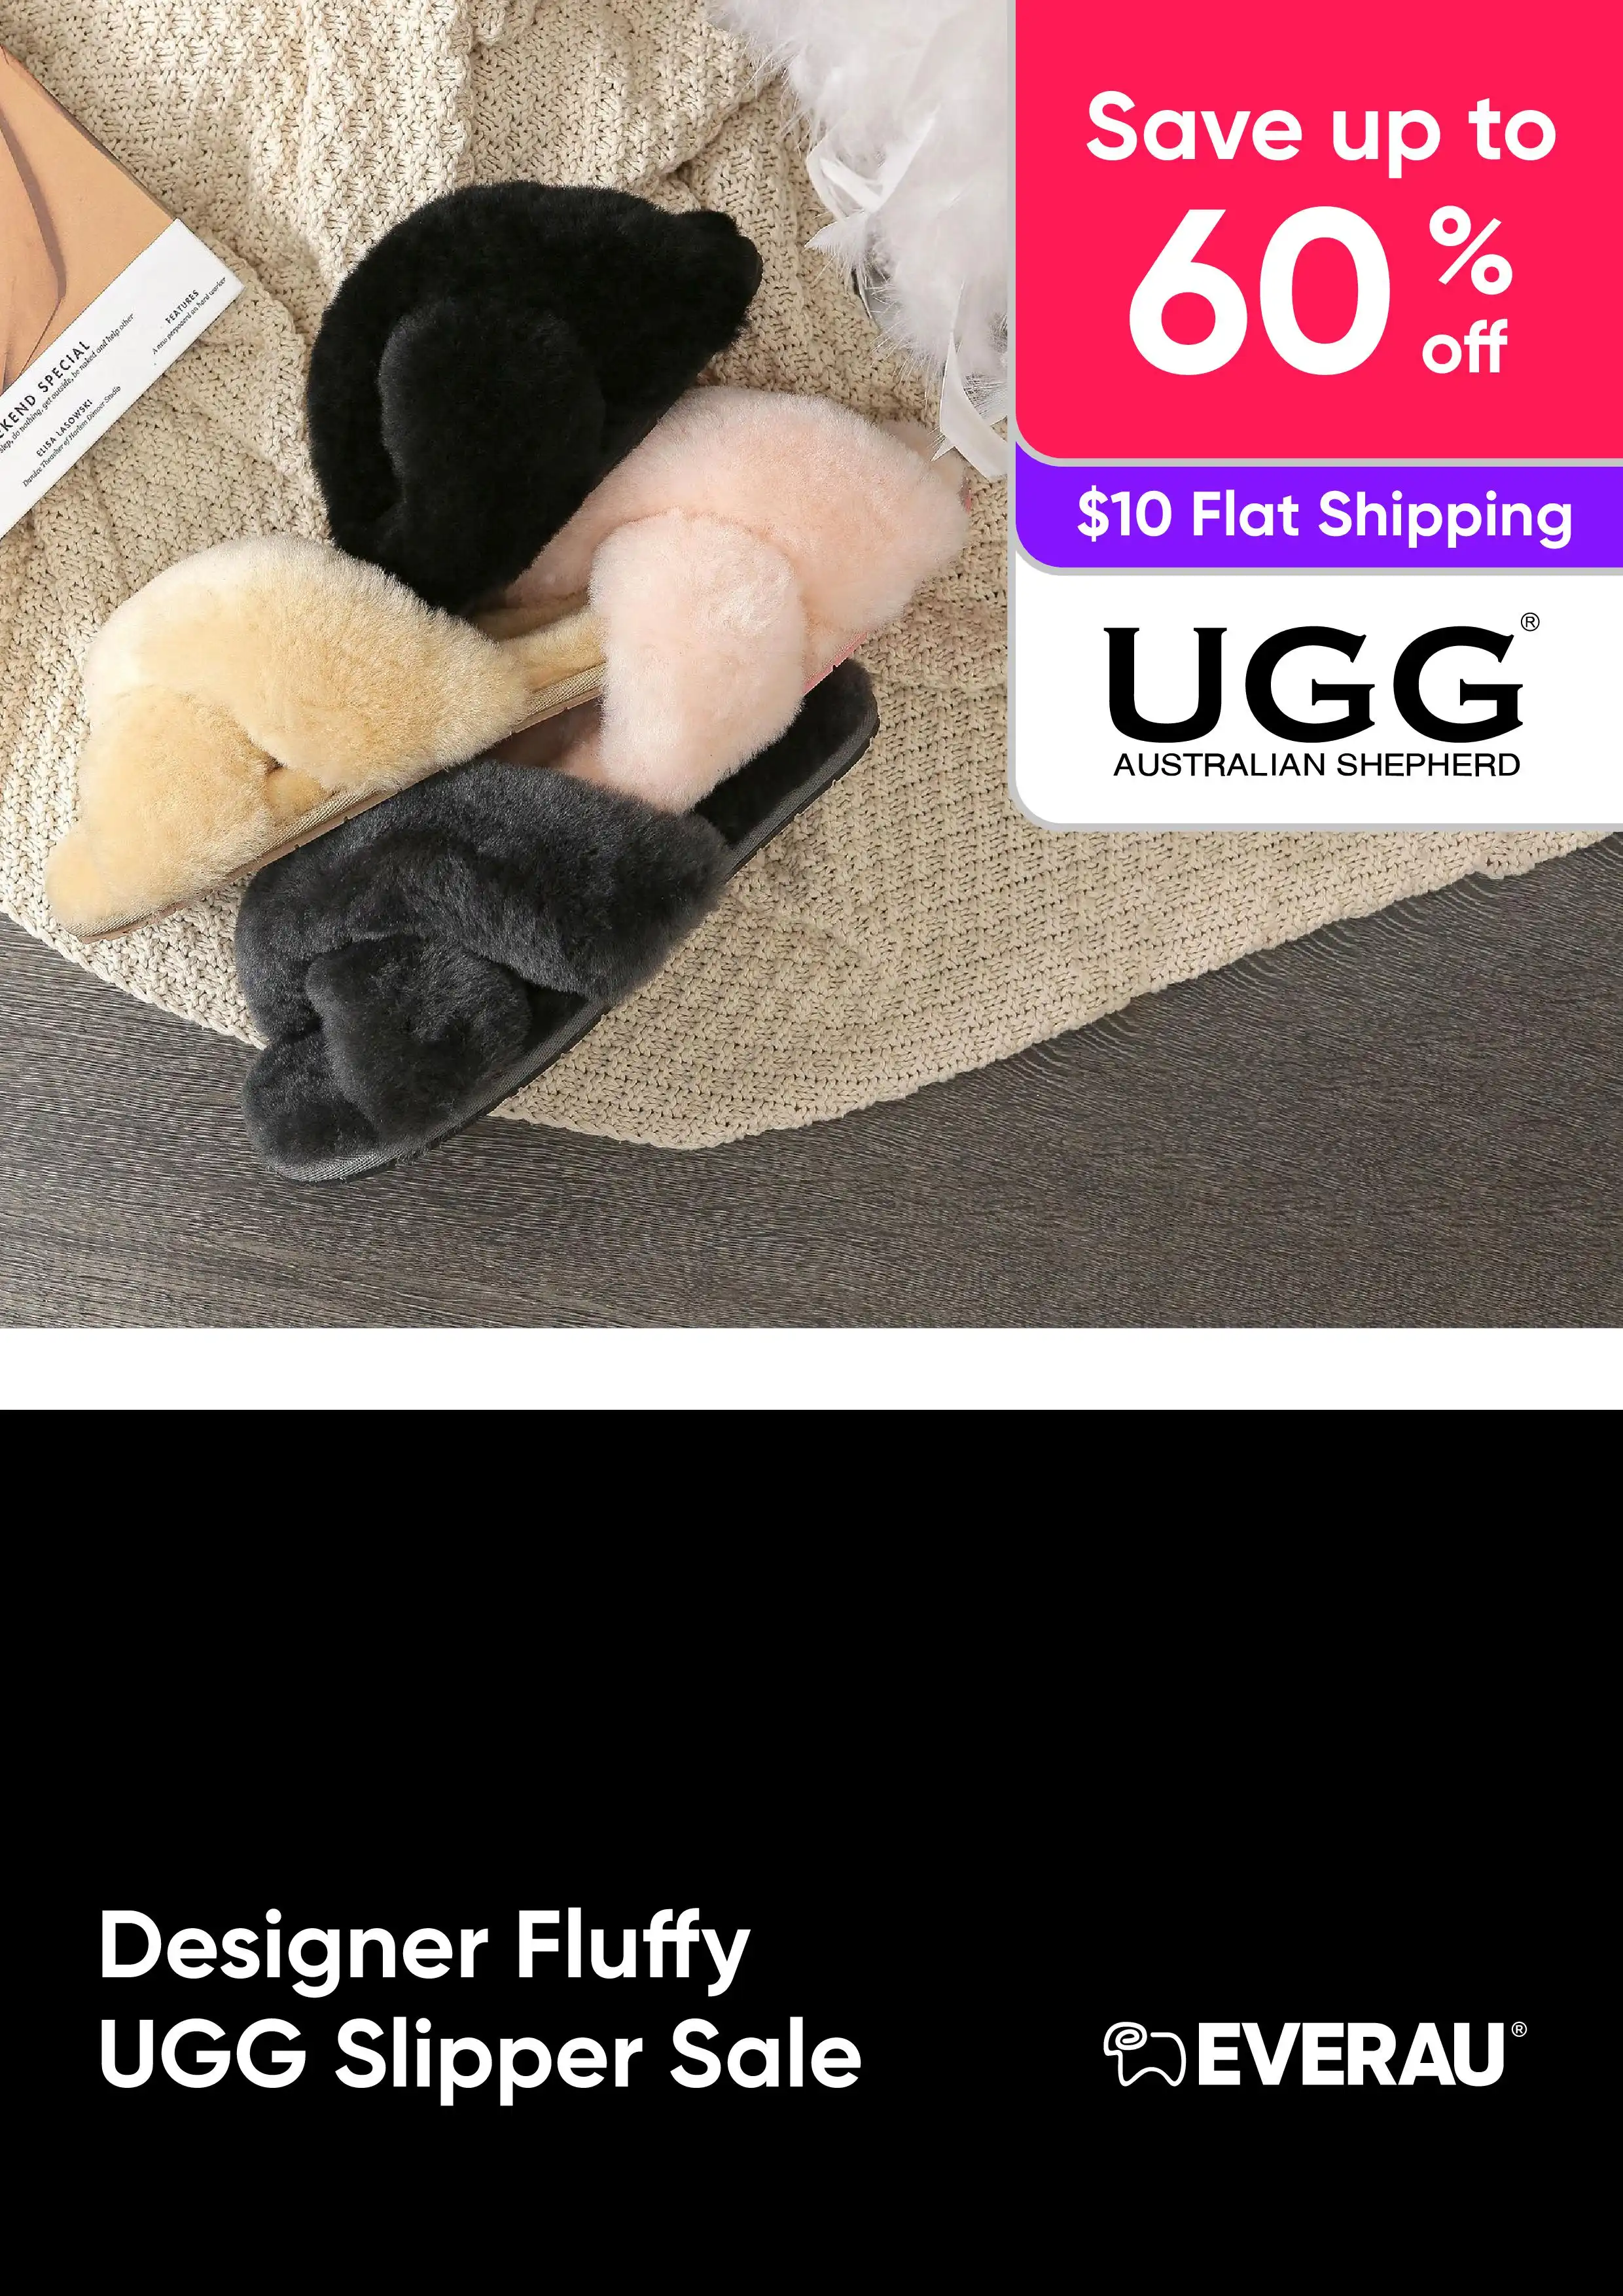 Designer Fluffy UGG Slipper - UGG Australian Shepherd - Save up 60%